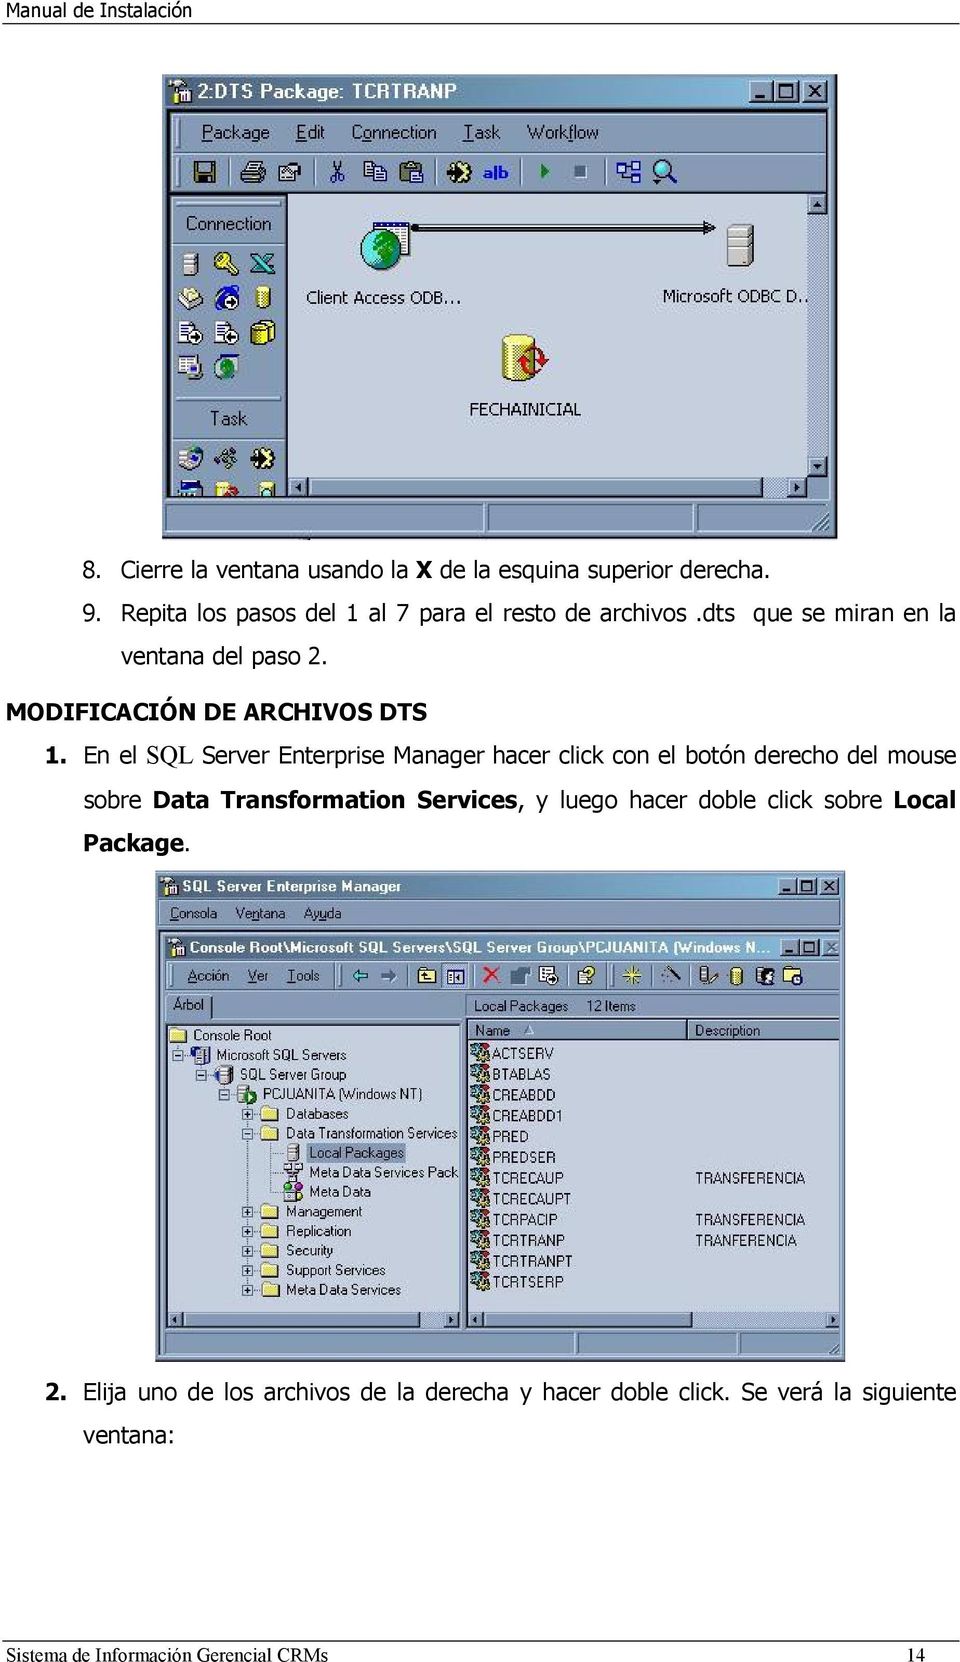 En el SQL Server Enterprise Manager hacer click con el botón derecho del mouse sobre Data Transformation Services, y luego